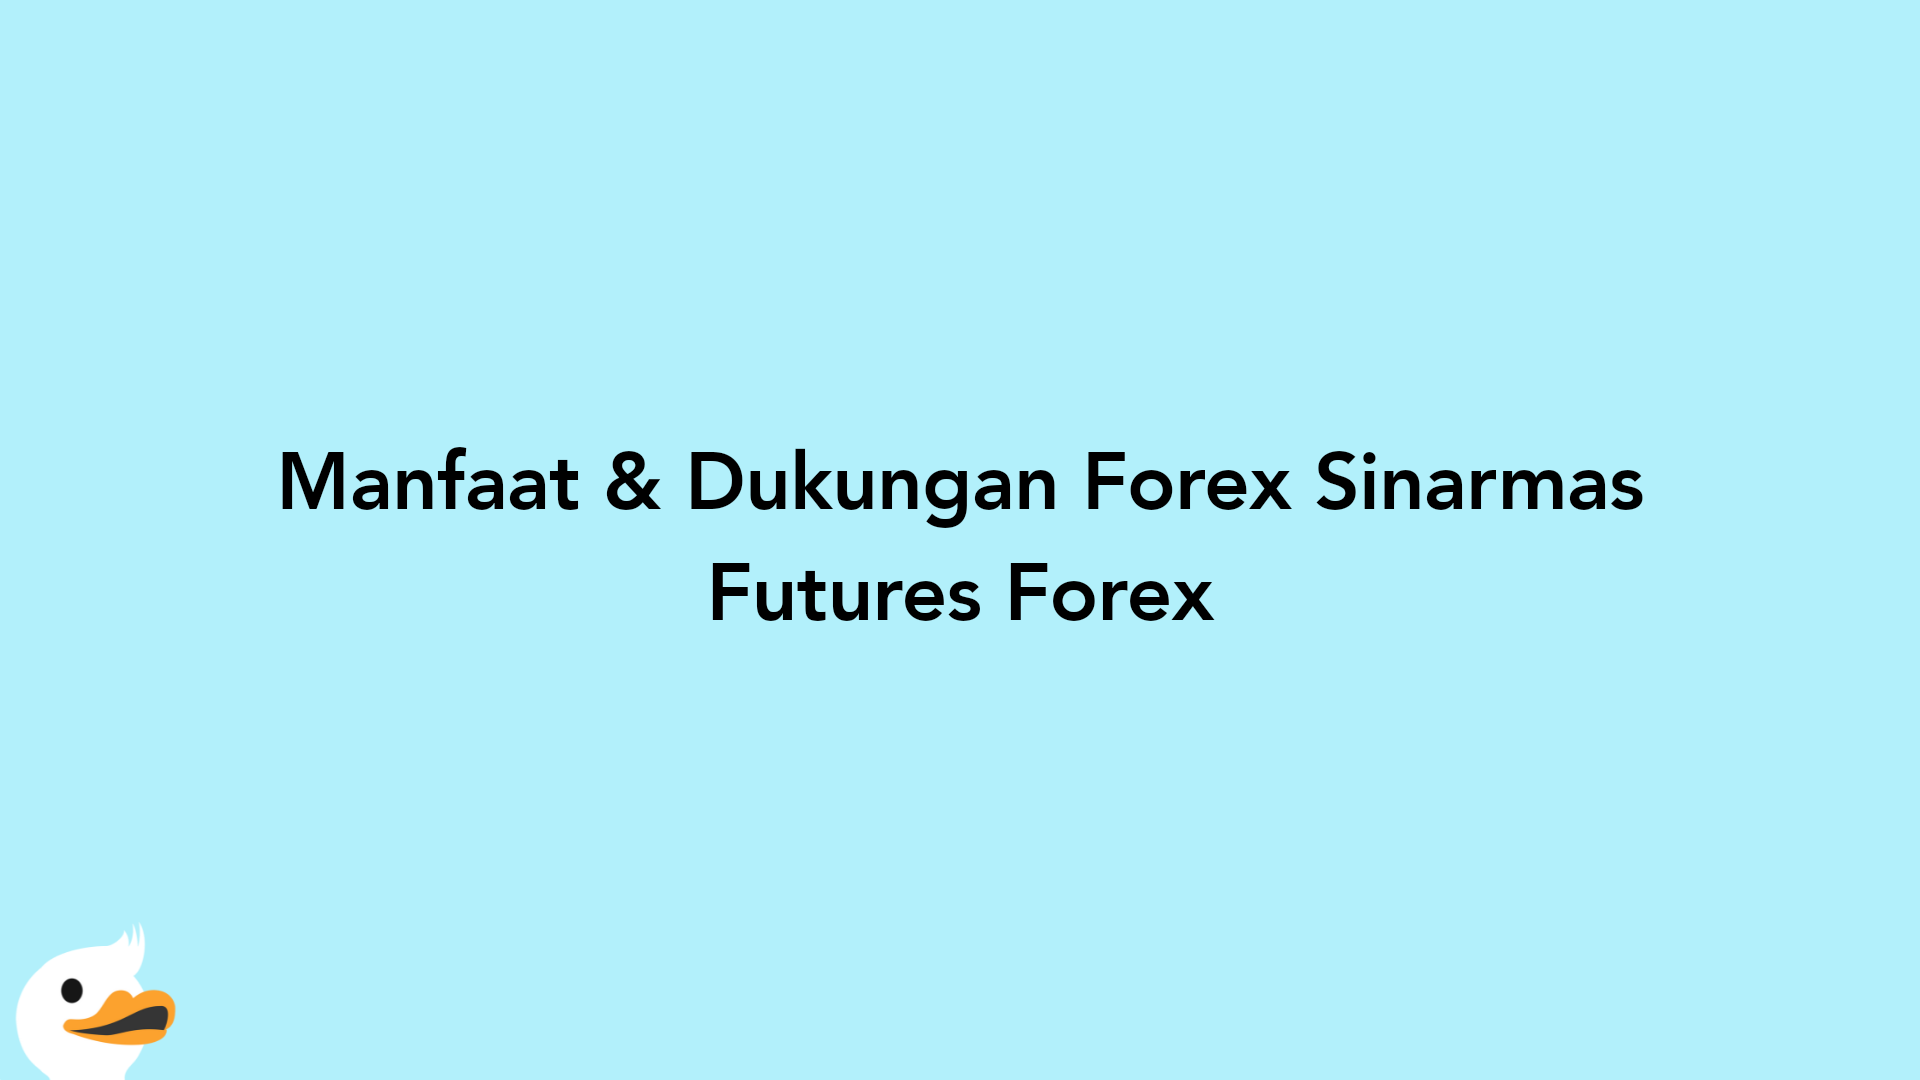 Manfaat & Dukungan Forex Sinarmas Futures Forex